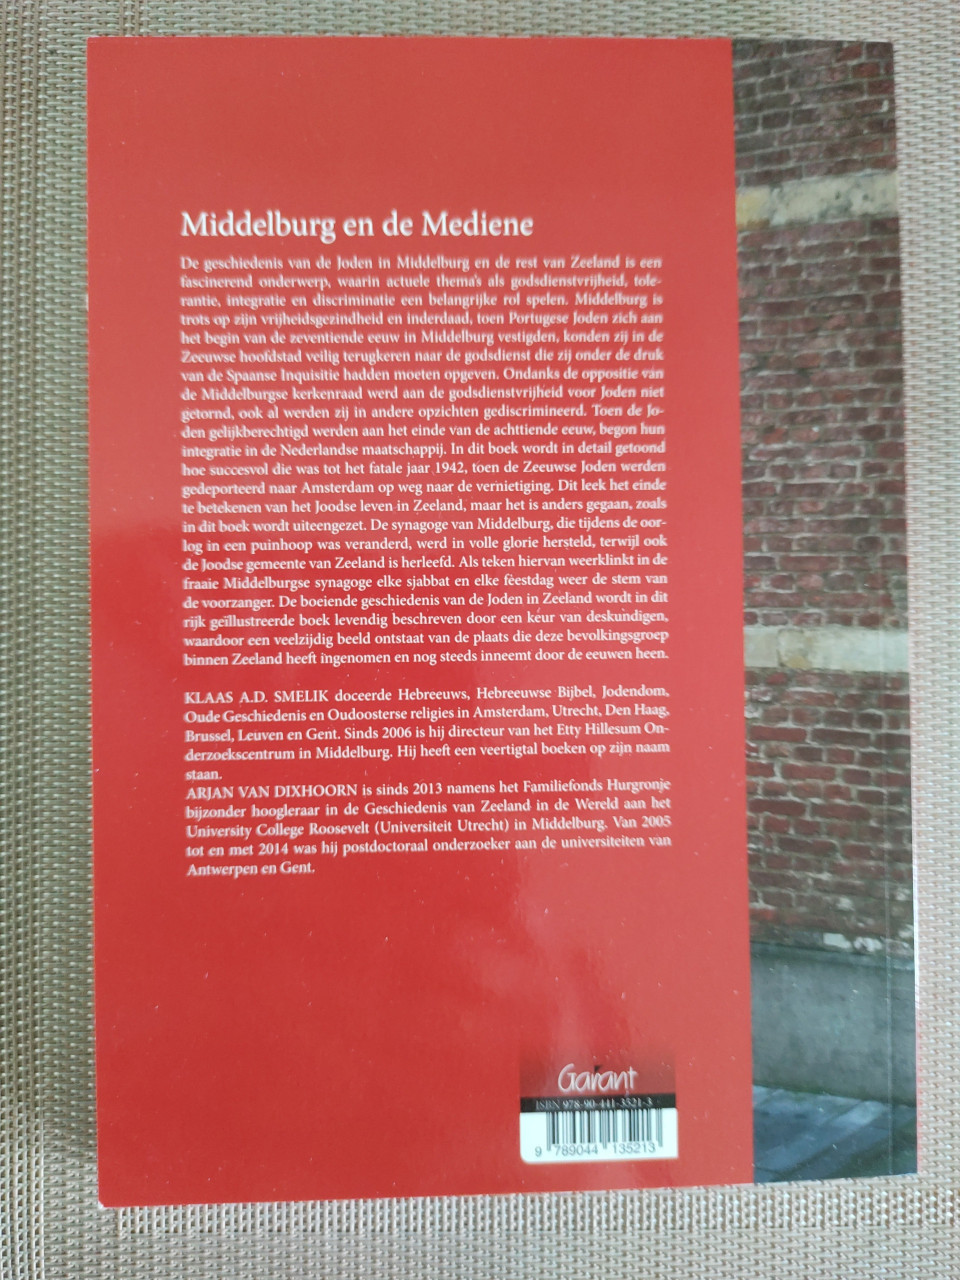 Middelburg en de Mediene. Joods leven in Zeeland door de eeuwen heen